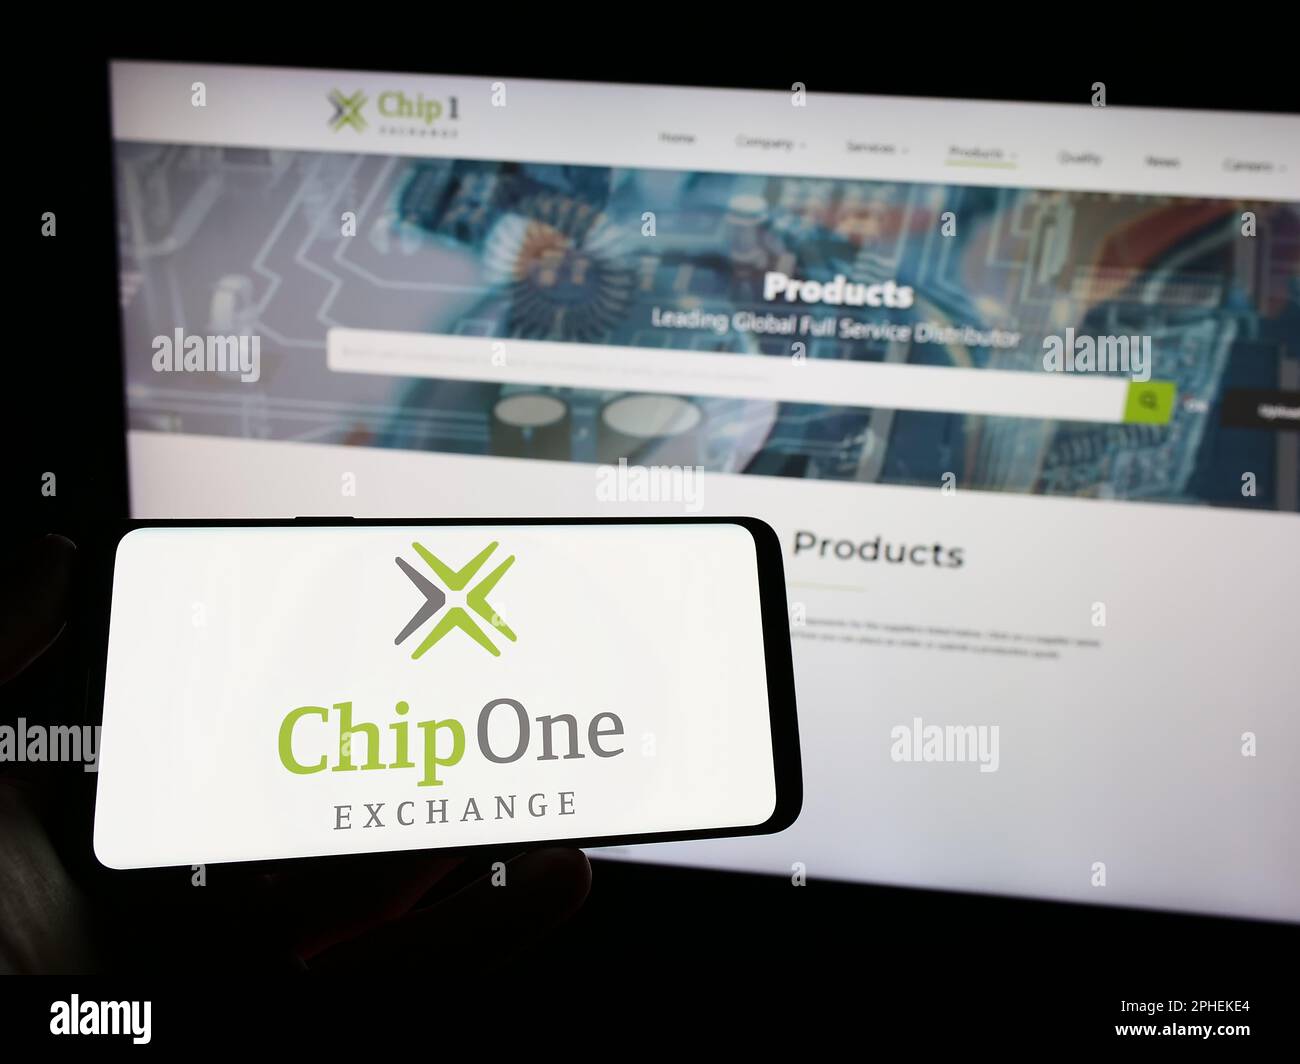 Personne tenant un téléphone portable avec le logo de la société de distribution allemande Chip 1 Exchange à l'écran en face de la page Web d'affaires. Mise au point sur l'affichage du téléphone. Banque D'Images